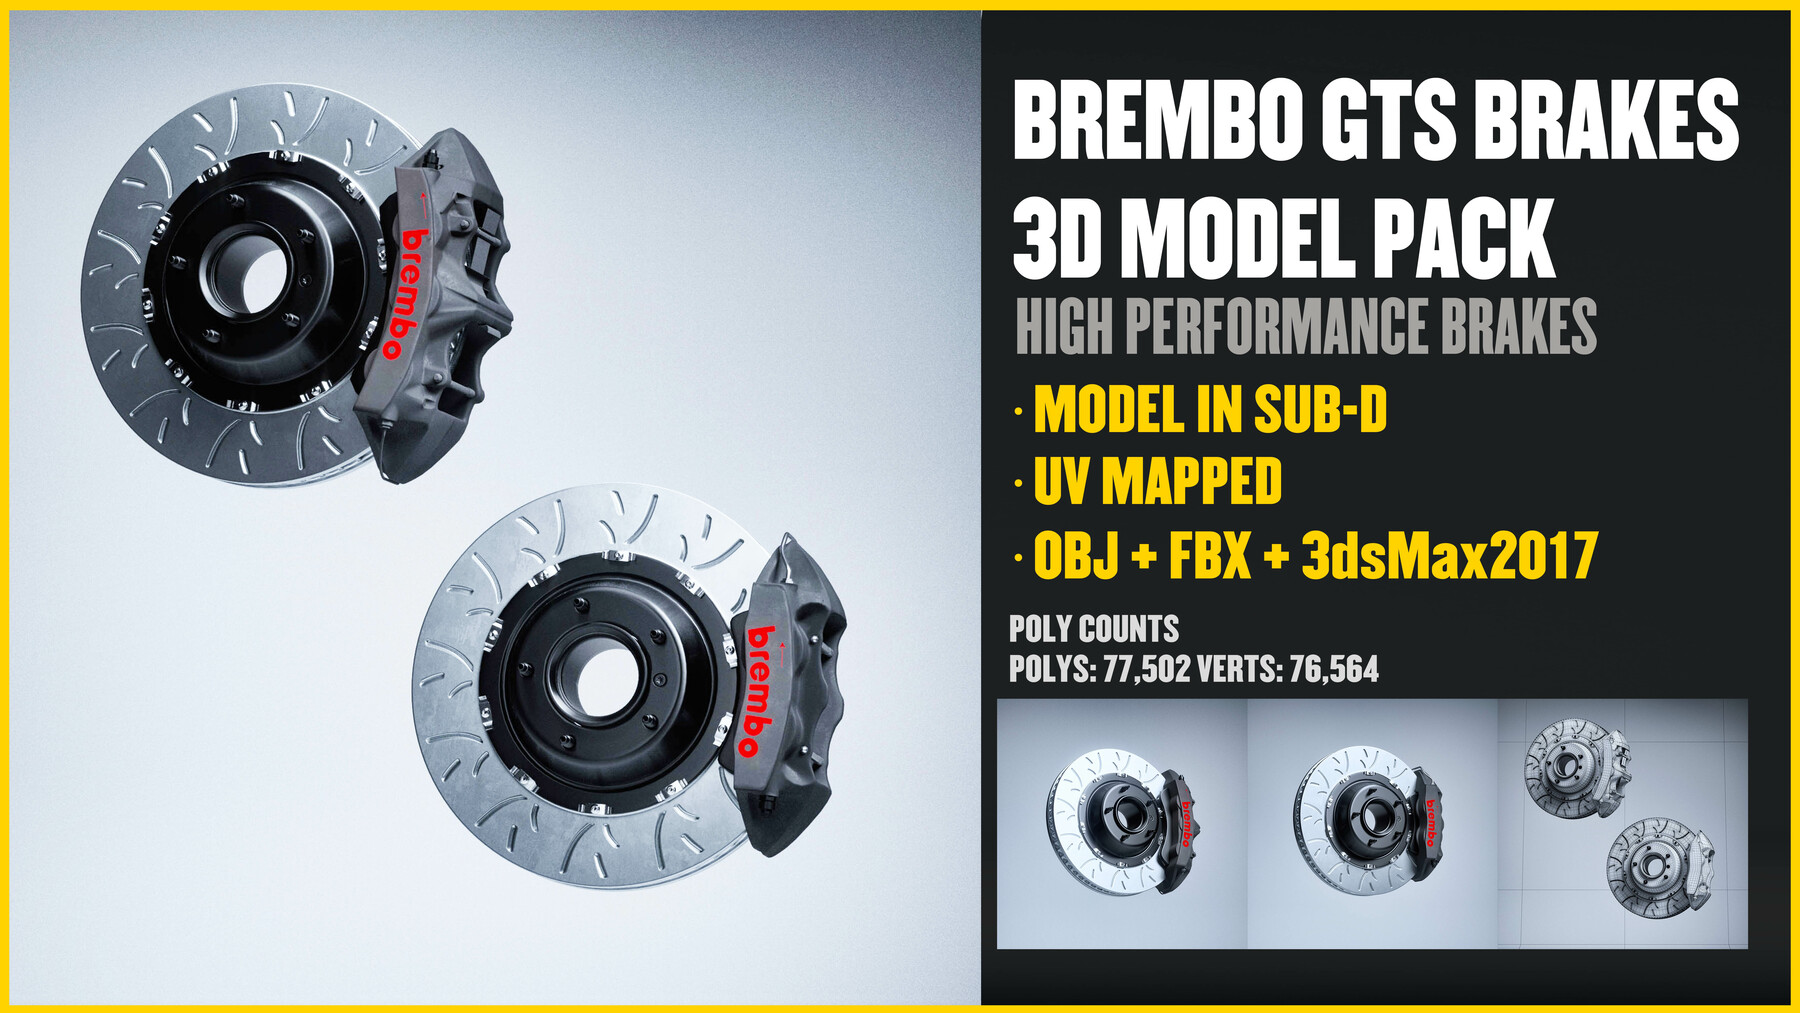 3D 3ds Max brembo brake brakes